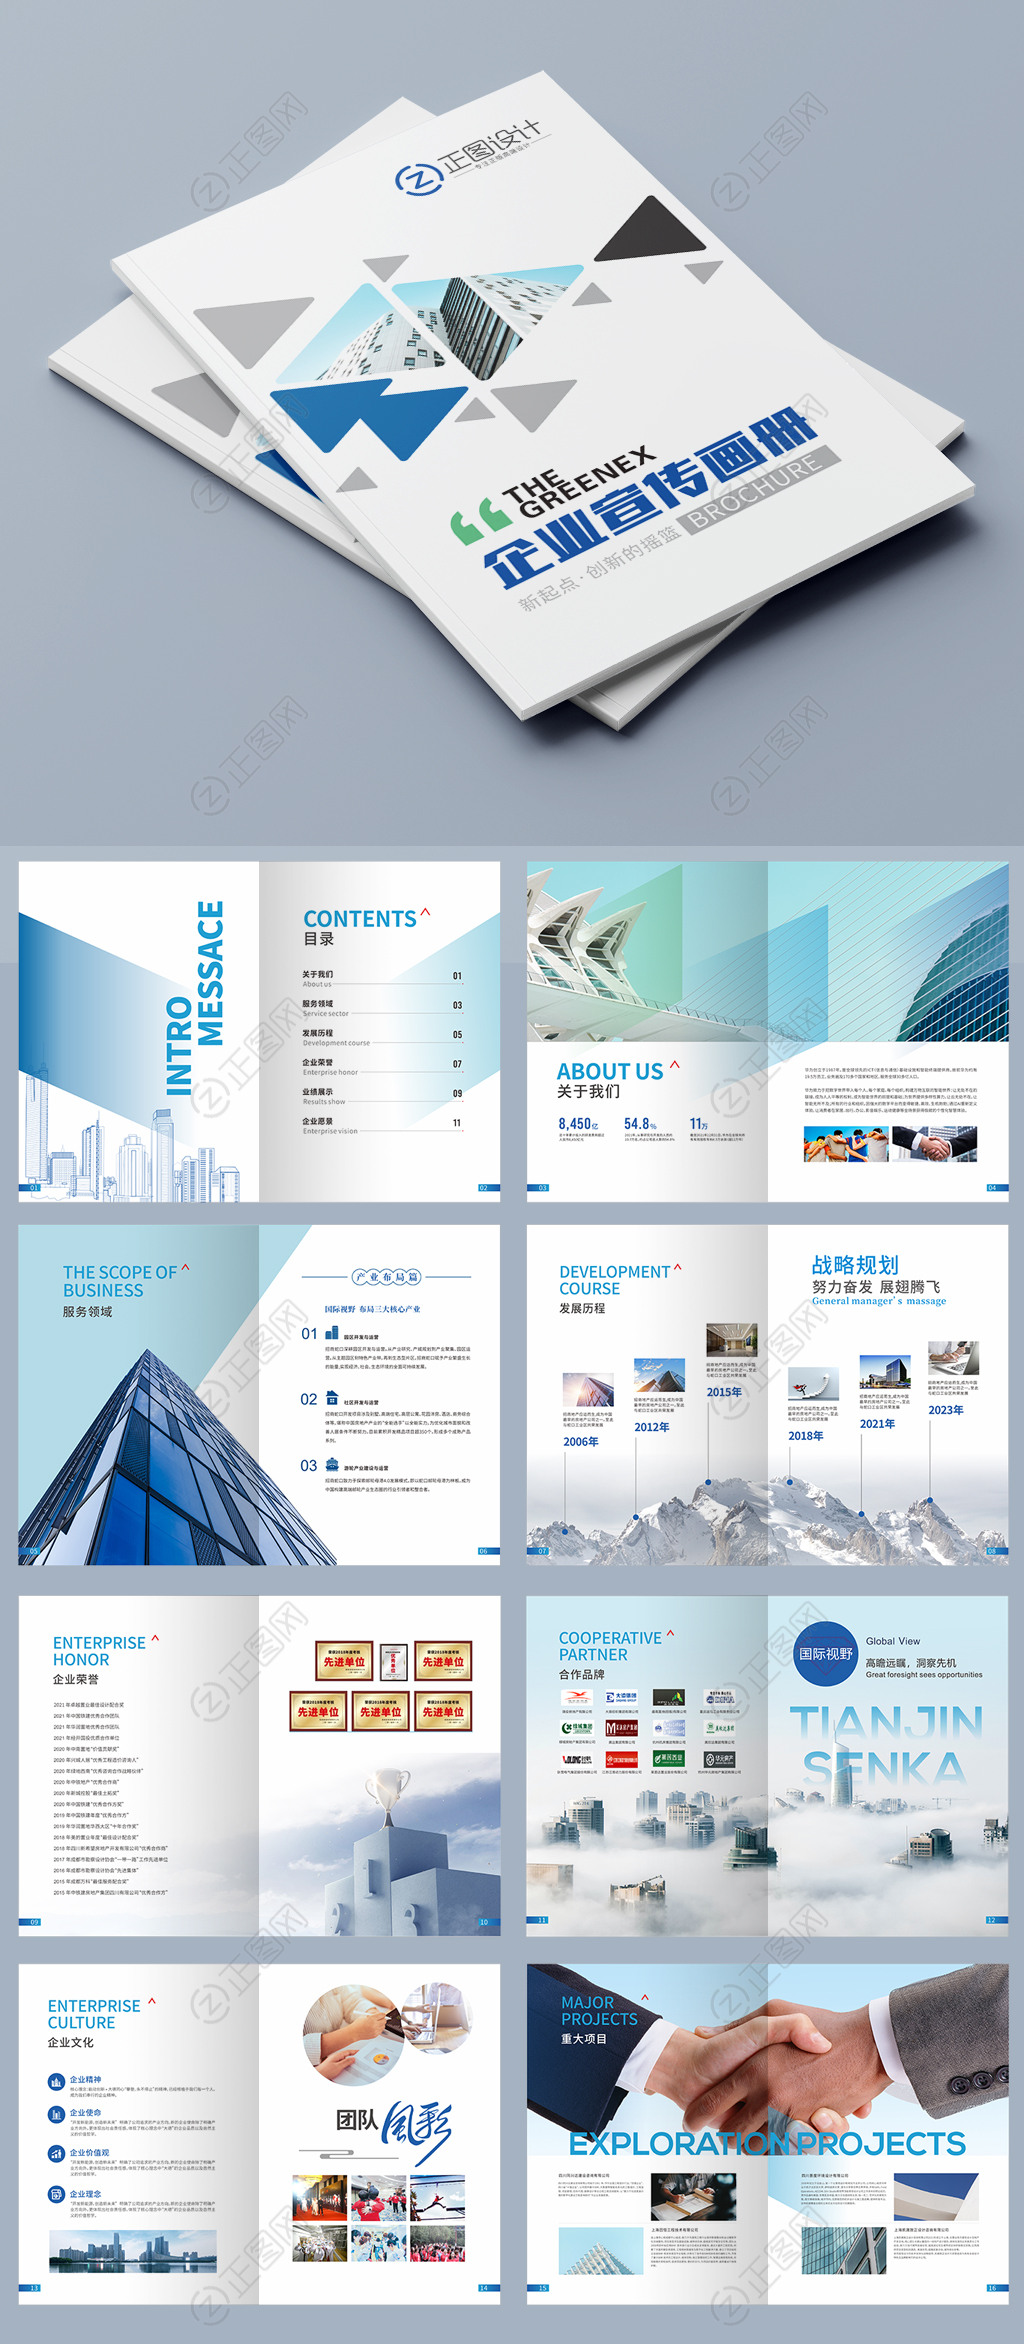 创意大气蓝色企业画册公司宣传册设计模板